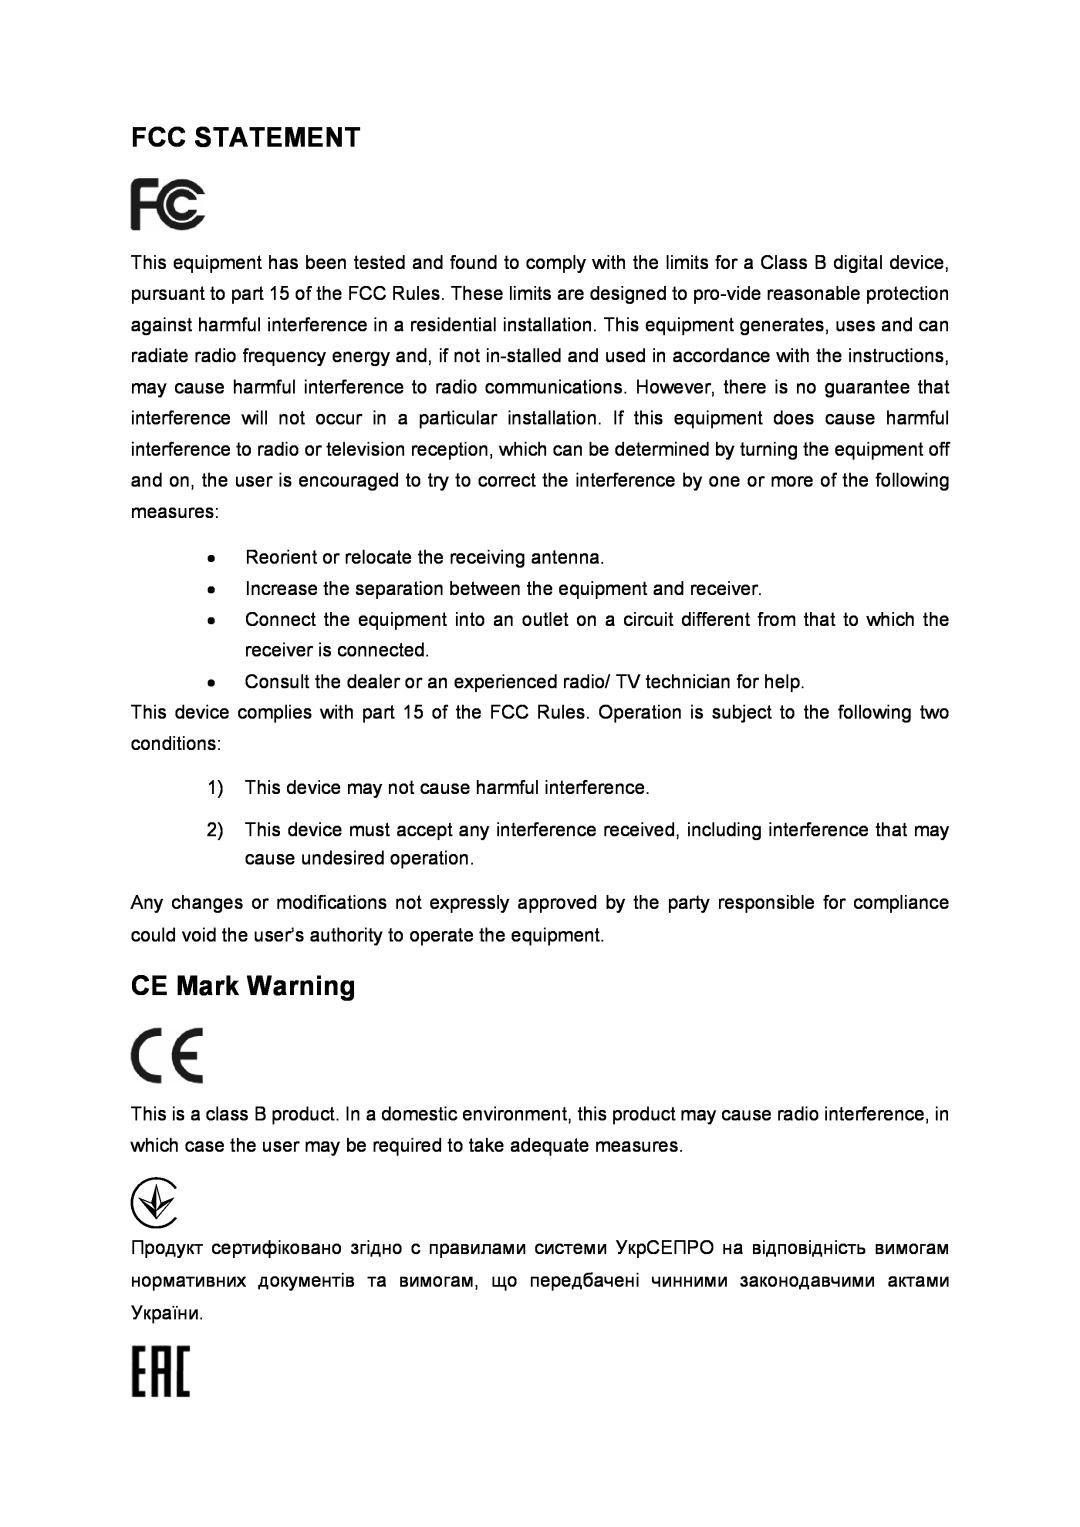 TP-Link TD-8816 manual Fcc Statement, CE Mark Warning 